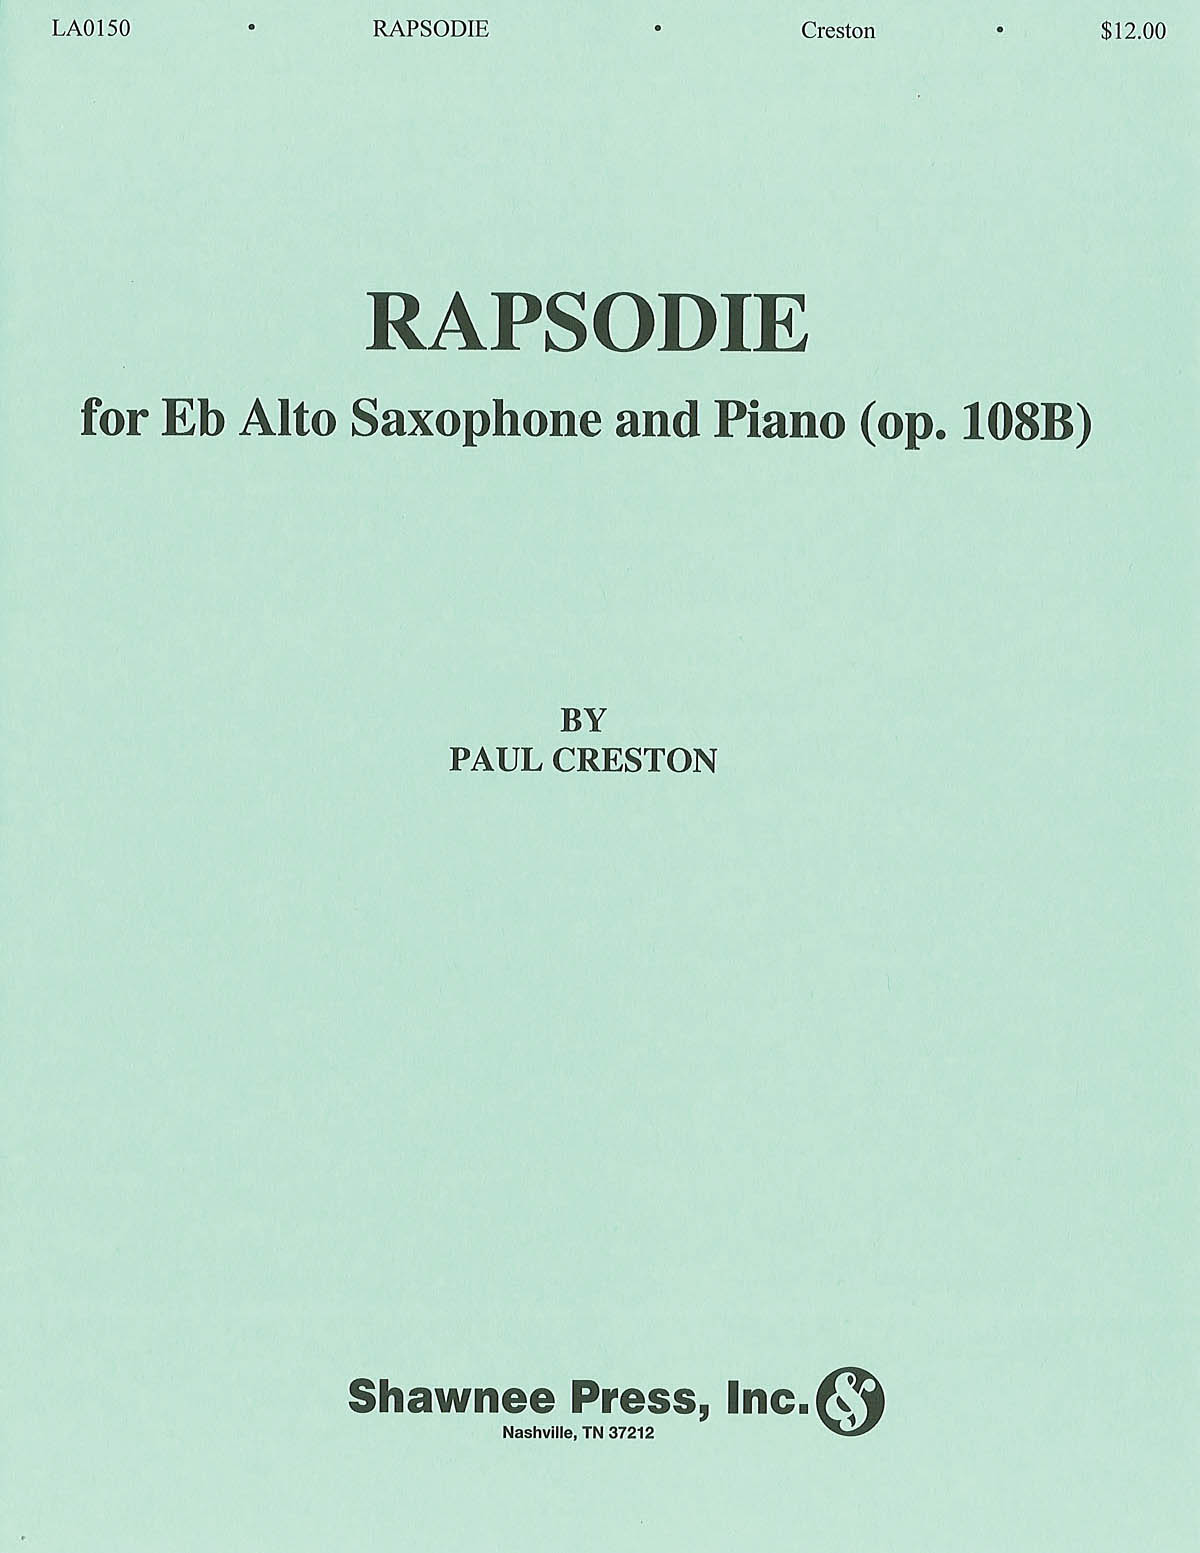 SHAWNEE PRESS CRESTON P. - RAPSODIE FOR ALTO SAX AND PIANO OP. 108a 